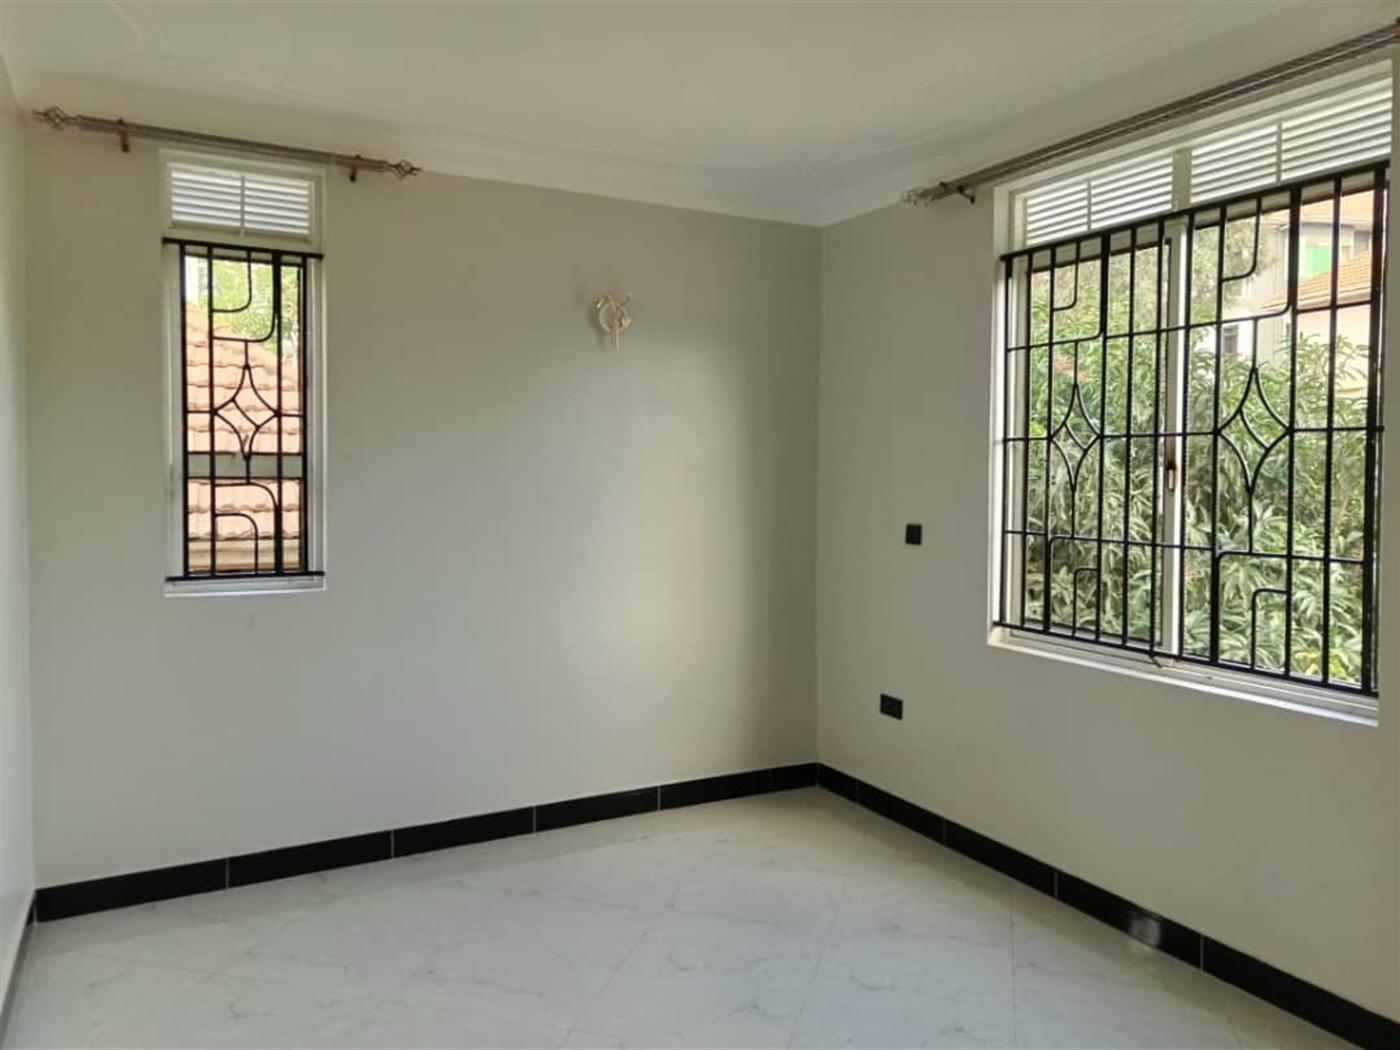 Apartment block for sale in Bbunga Kampala